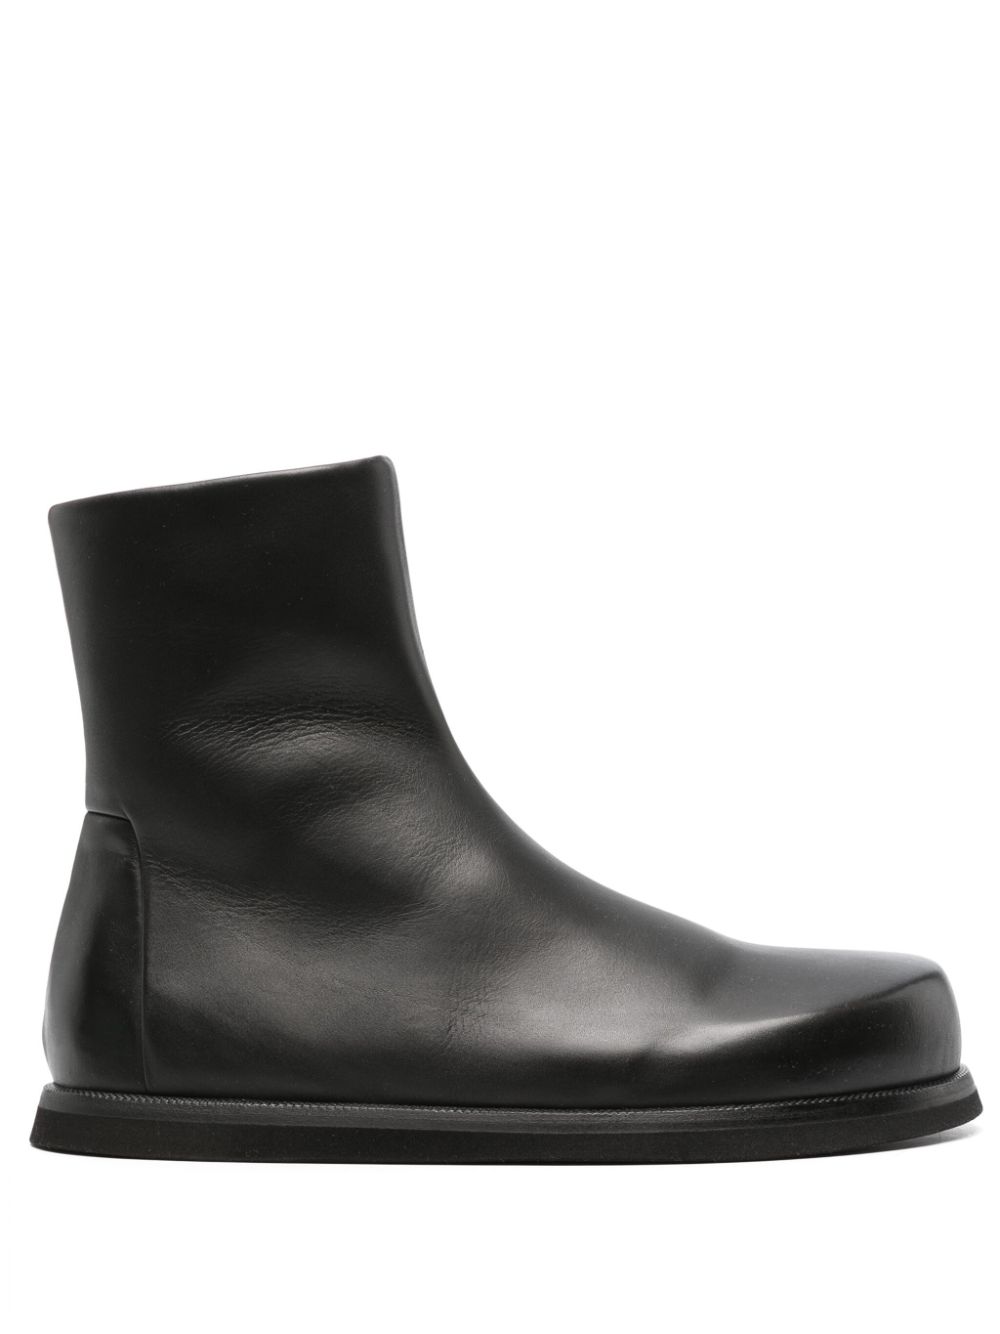 Marsèll Accom MM4584 leather boots - Black von Marsèll